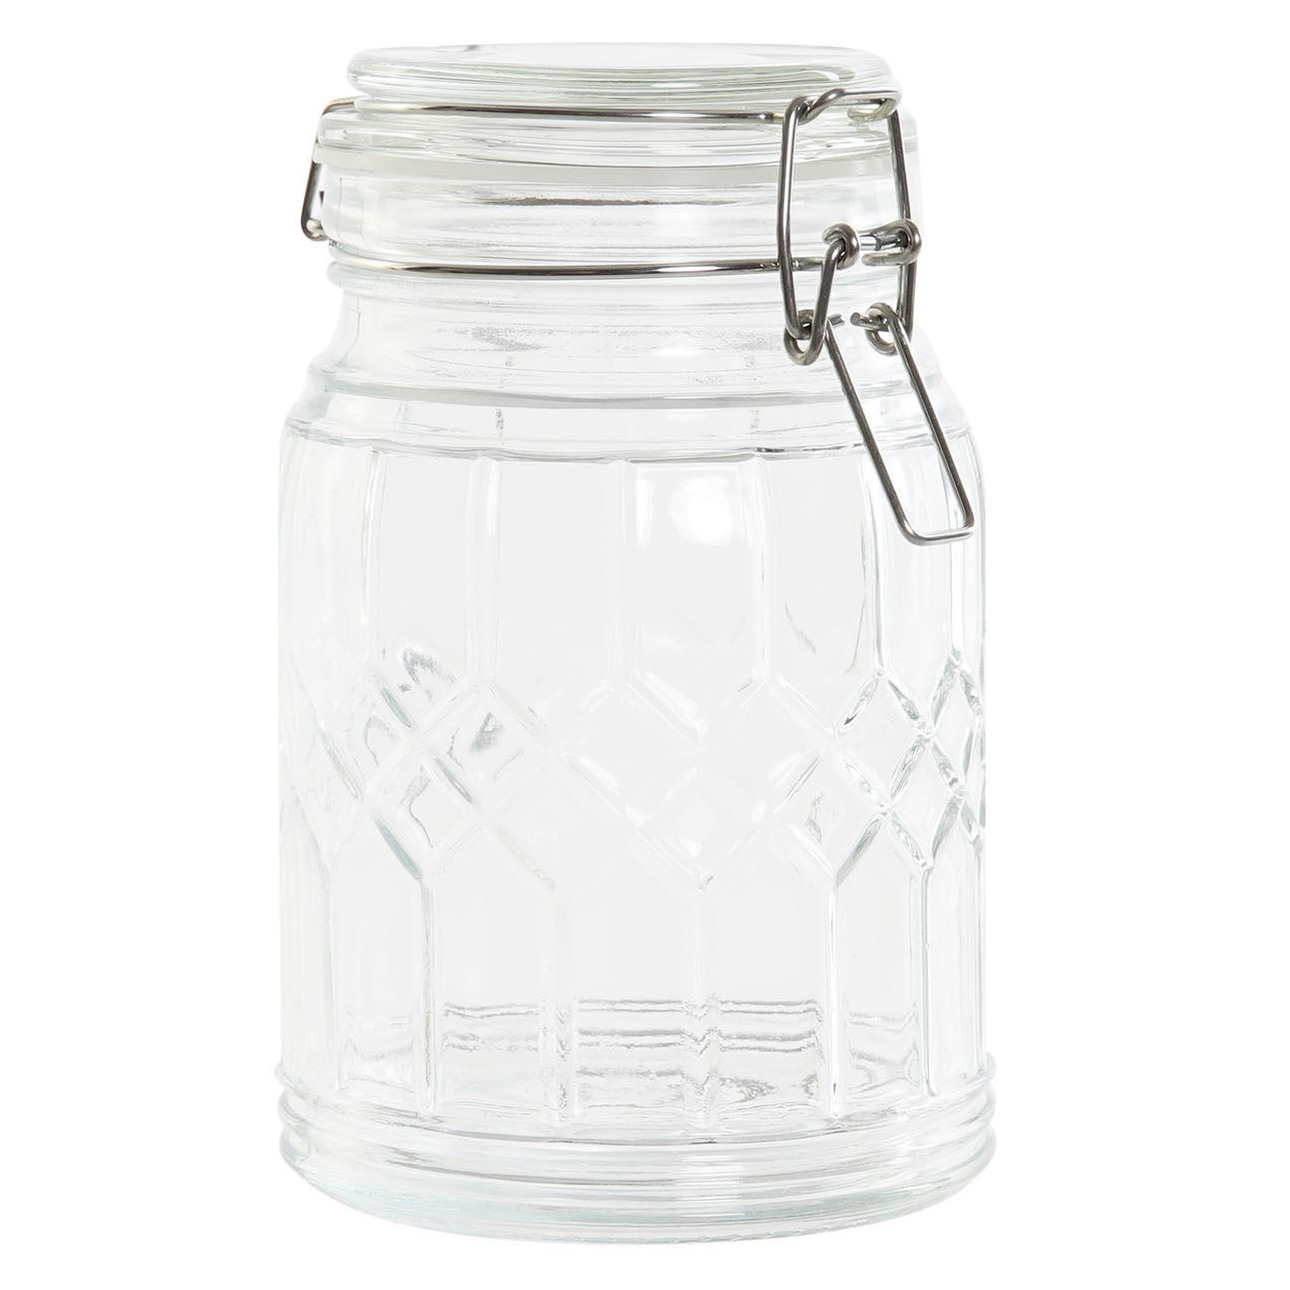 Items Voorraadpot/weckpot 710 ml glas met metalen beugelsluiting -